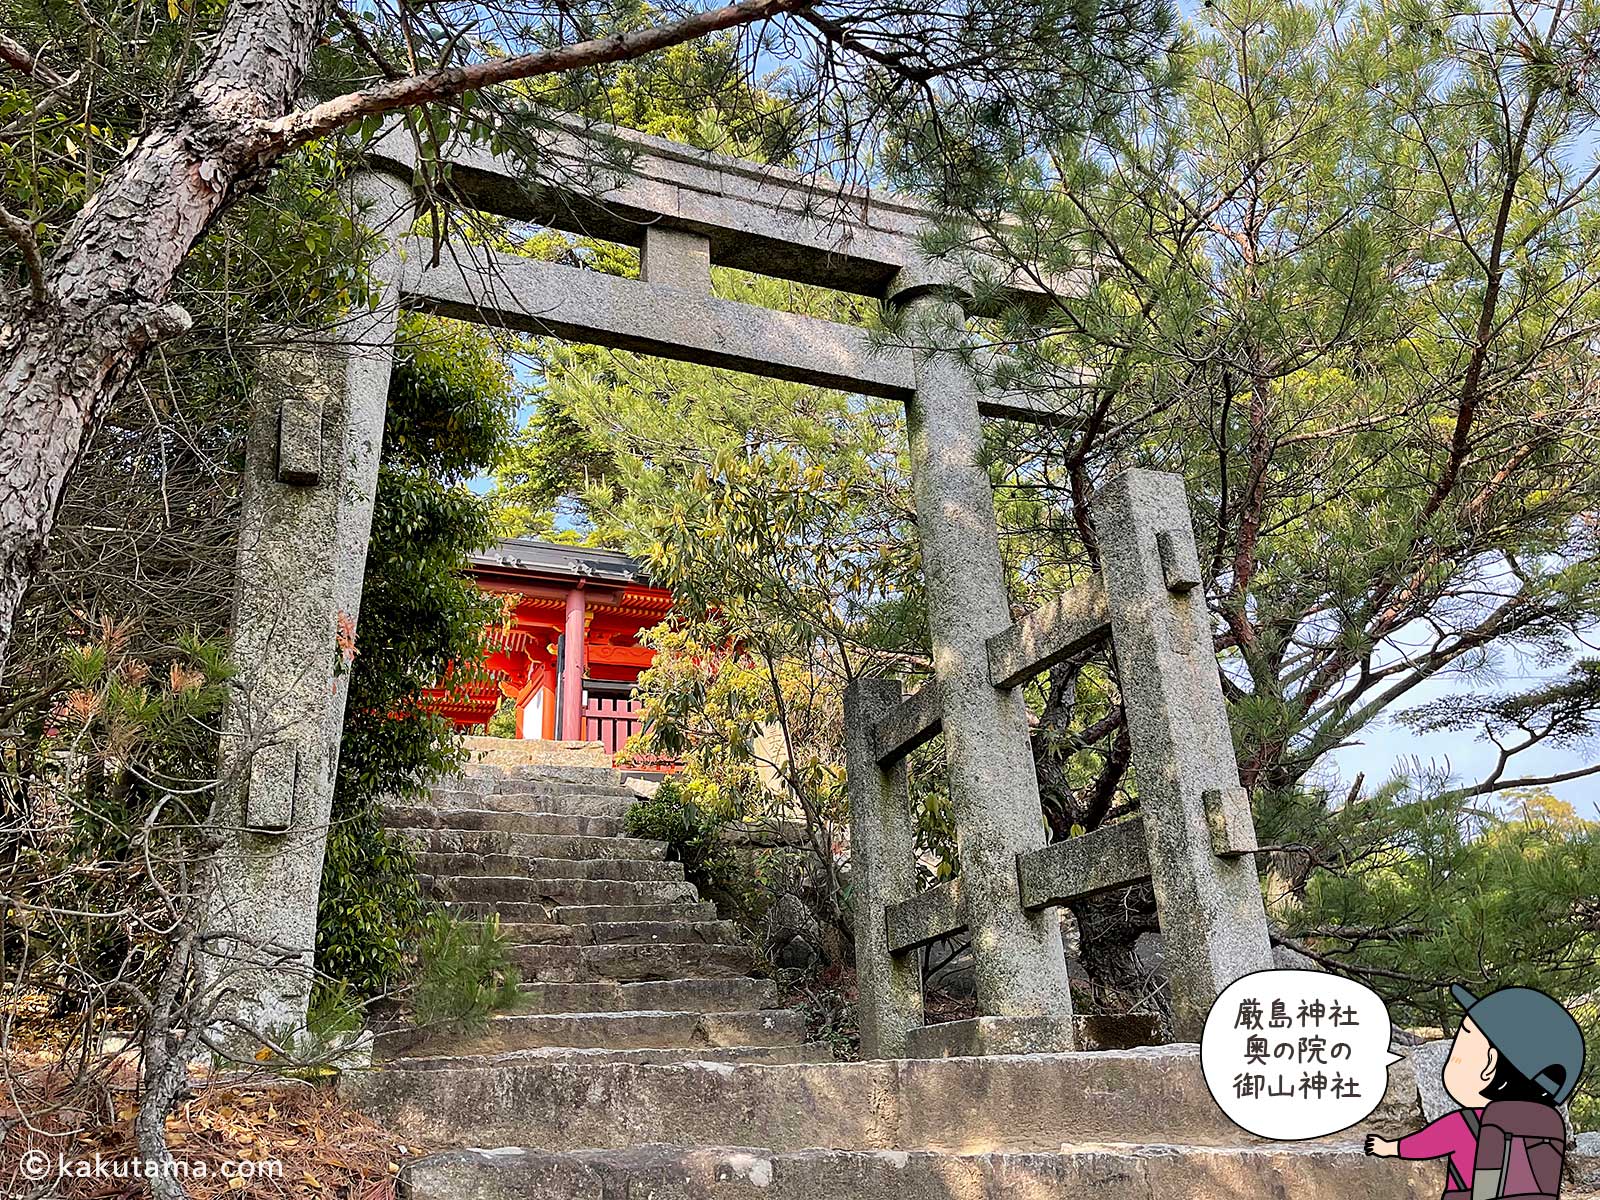 御山神社一の鳥居の写真と登山者のイラスト